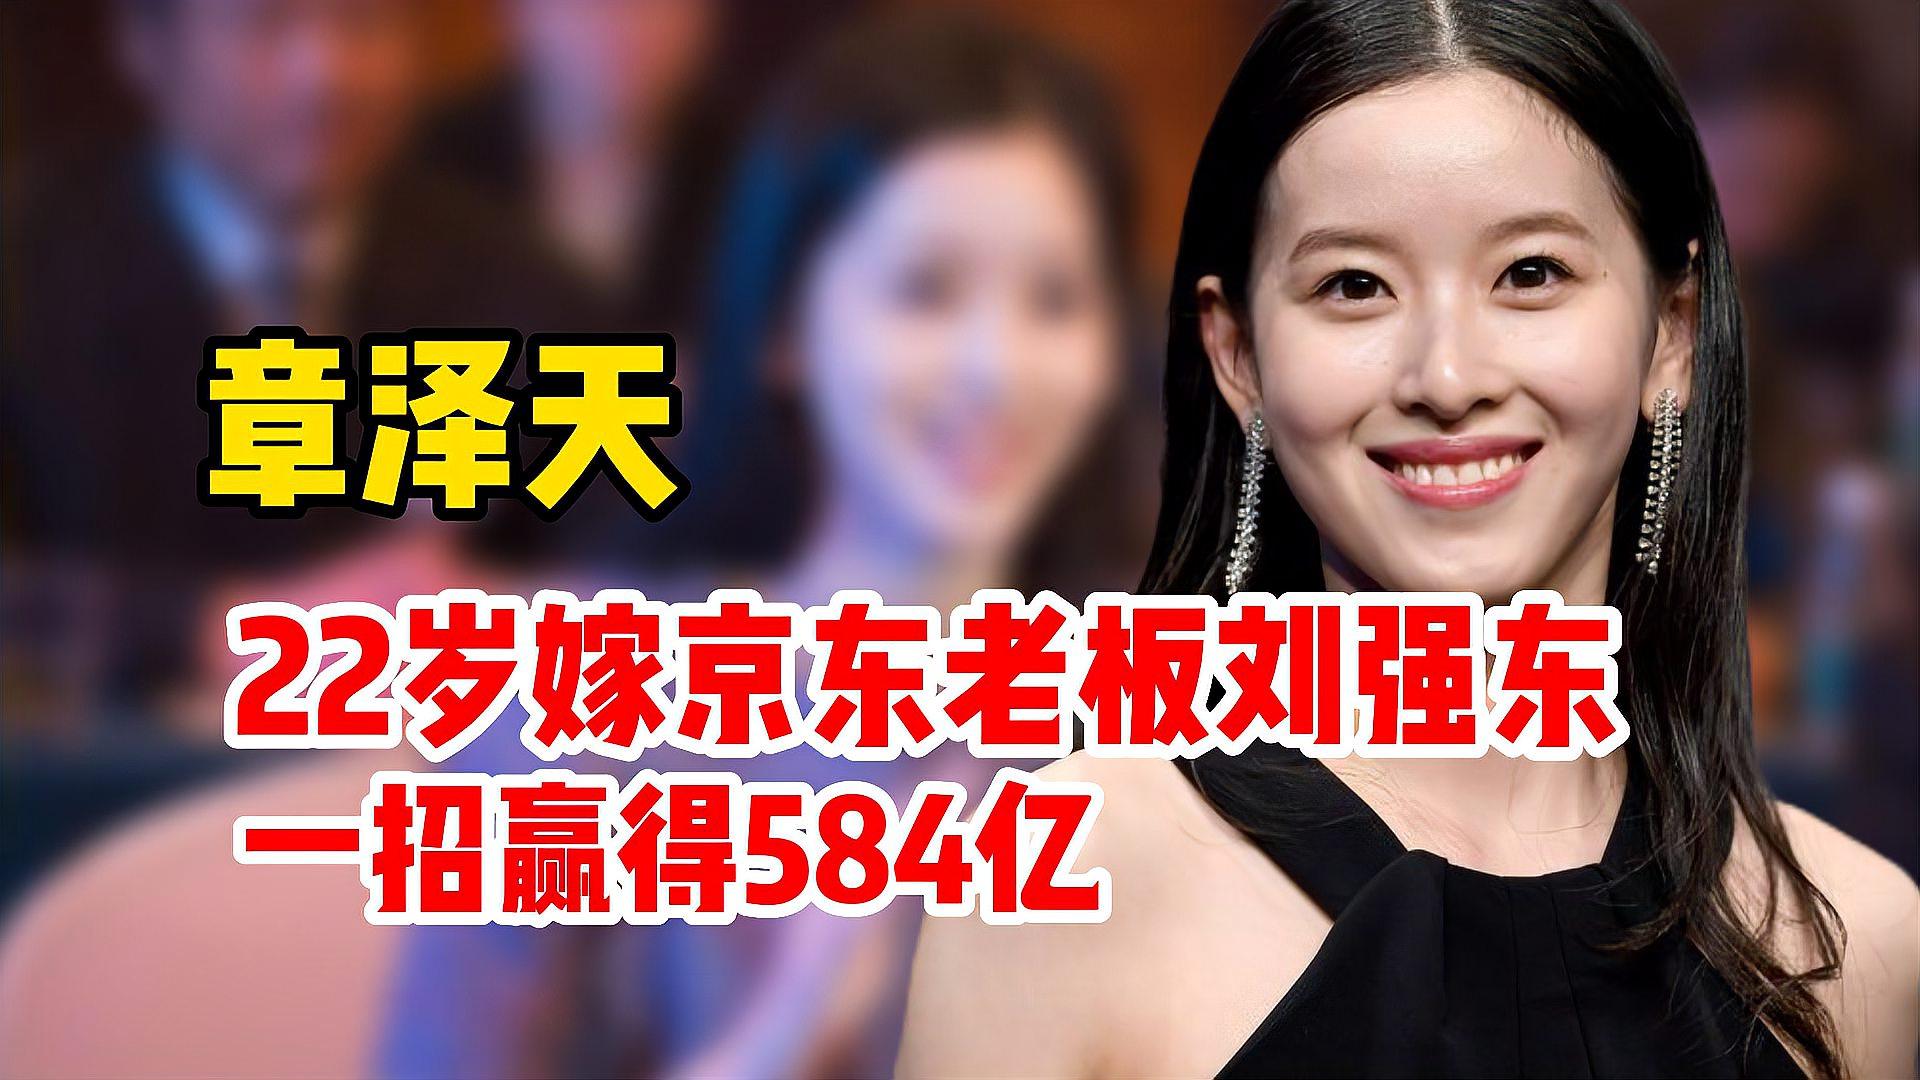 奶茶妹妹章泽天:22岁嫁京东老板刘强东,一招赢得584亿